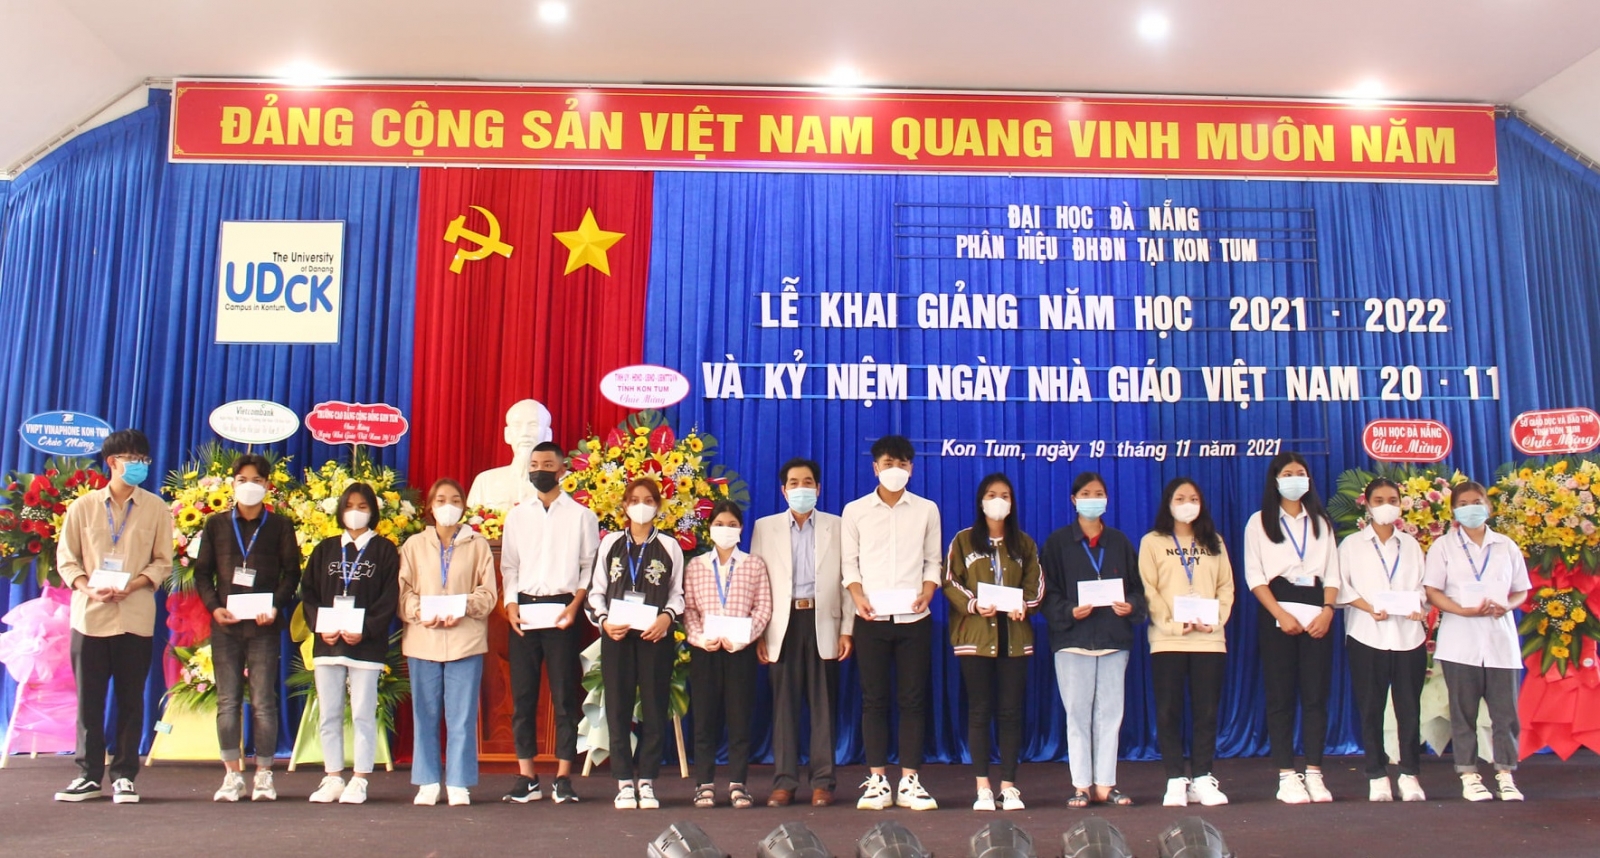 Phân hiệu Đại học Đà Nẵng tại Kon Tum khai giảng năm học 2021-2022 - Ảnh minh hoạ 3